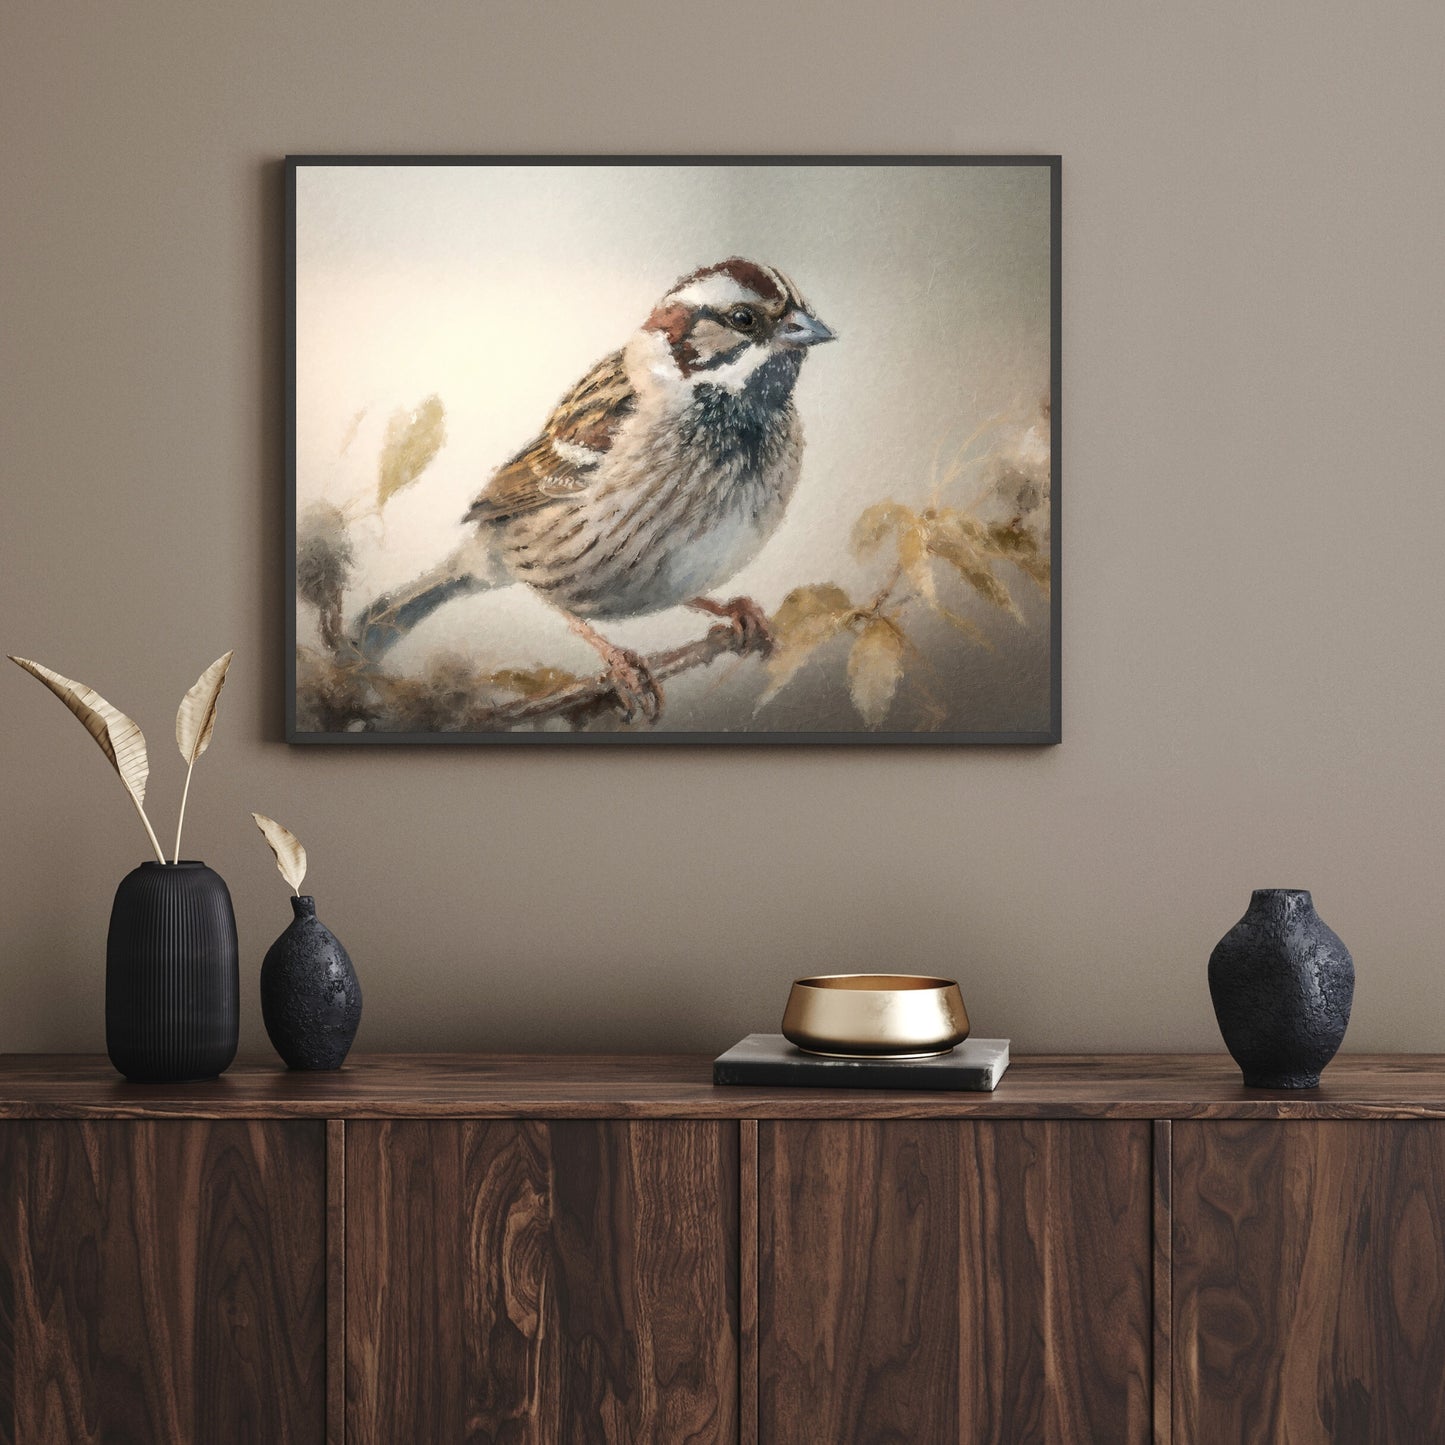 Vintage-Vogel-Malerei-Papier-Posterdrucke, Vintage-Ölgemälde-Stil und Wandkunst eines Spatzen, der auf einem Zweig sitzt, Vogelbeobachtungsdruck